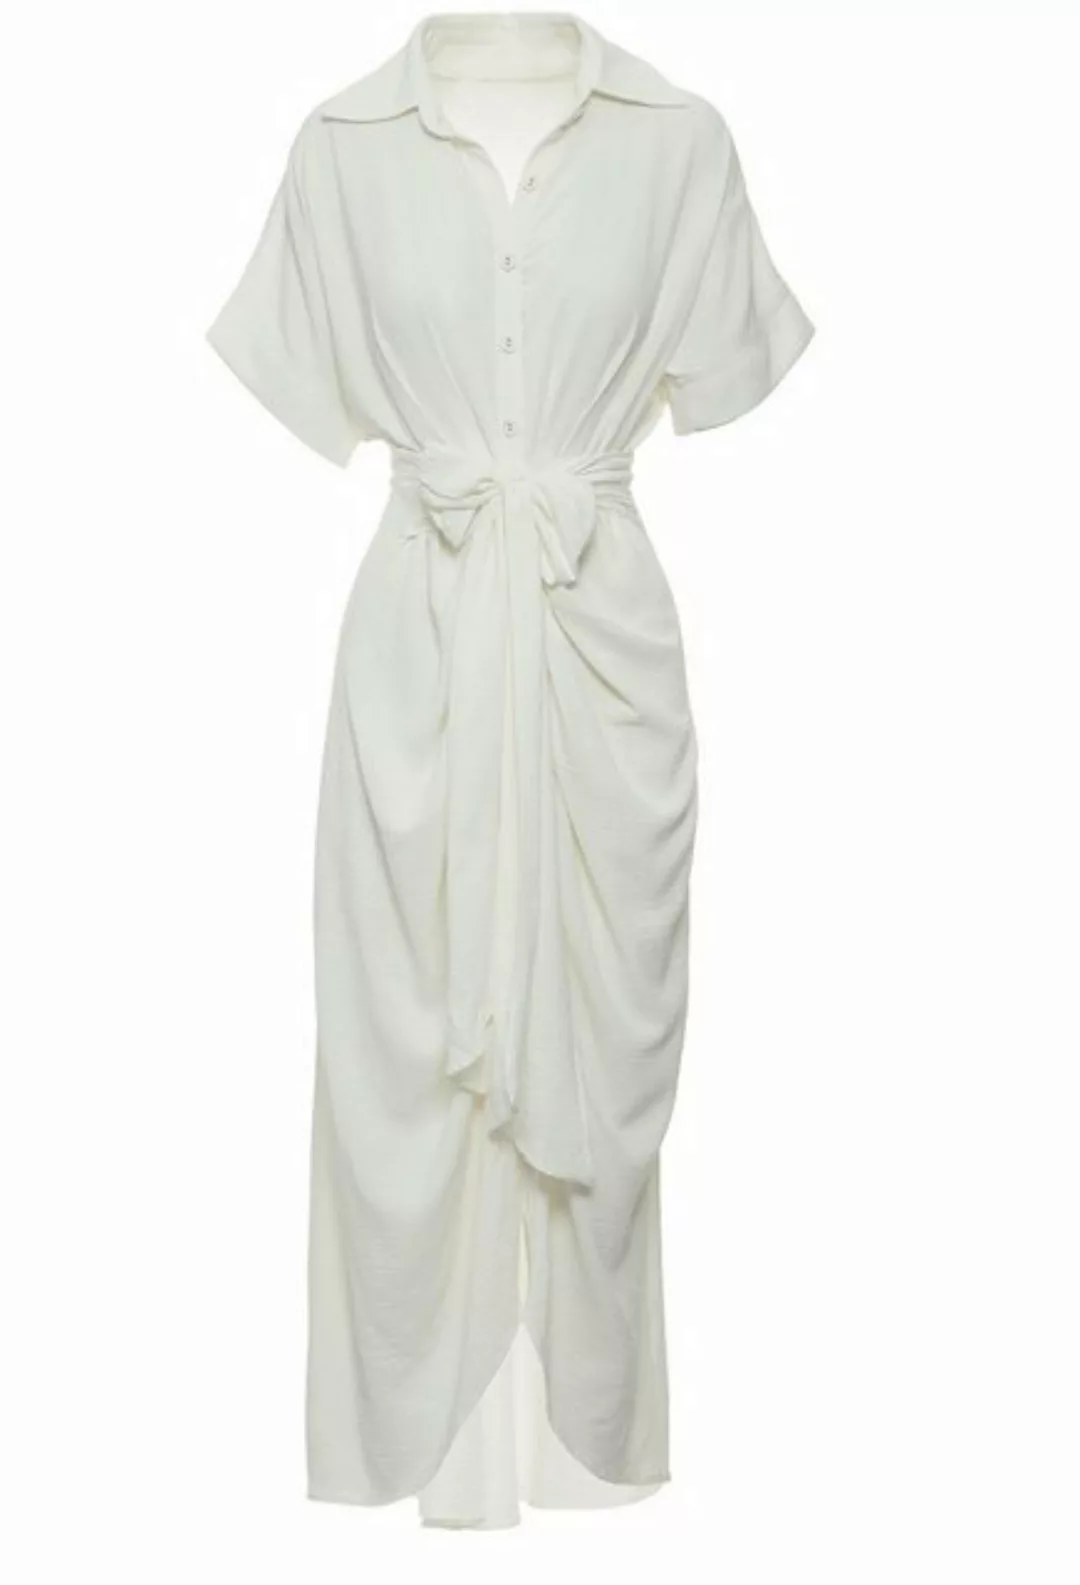 SEGUEN Sommerkleid Halblanges kurzärmeliges Kleid mit Revers Einreihige Kle günstig online kaufen